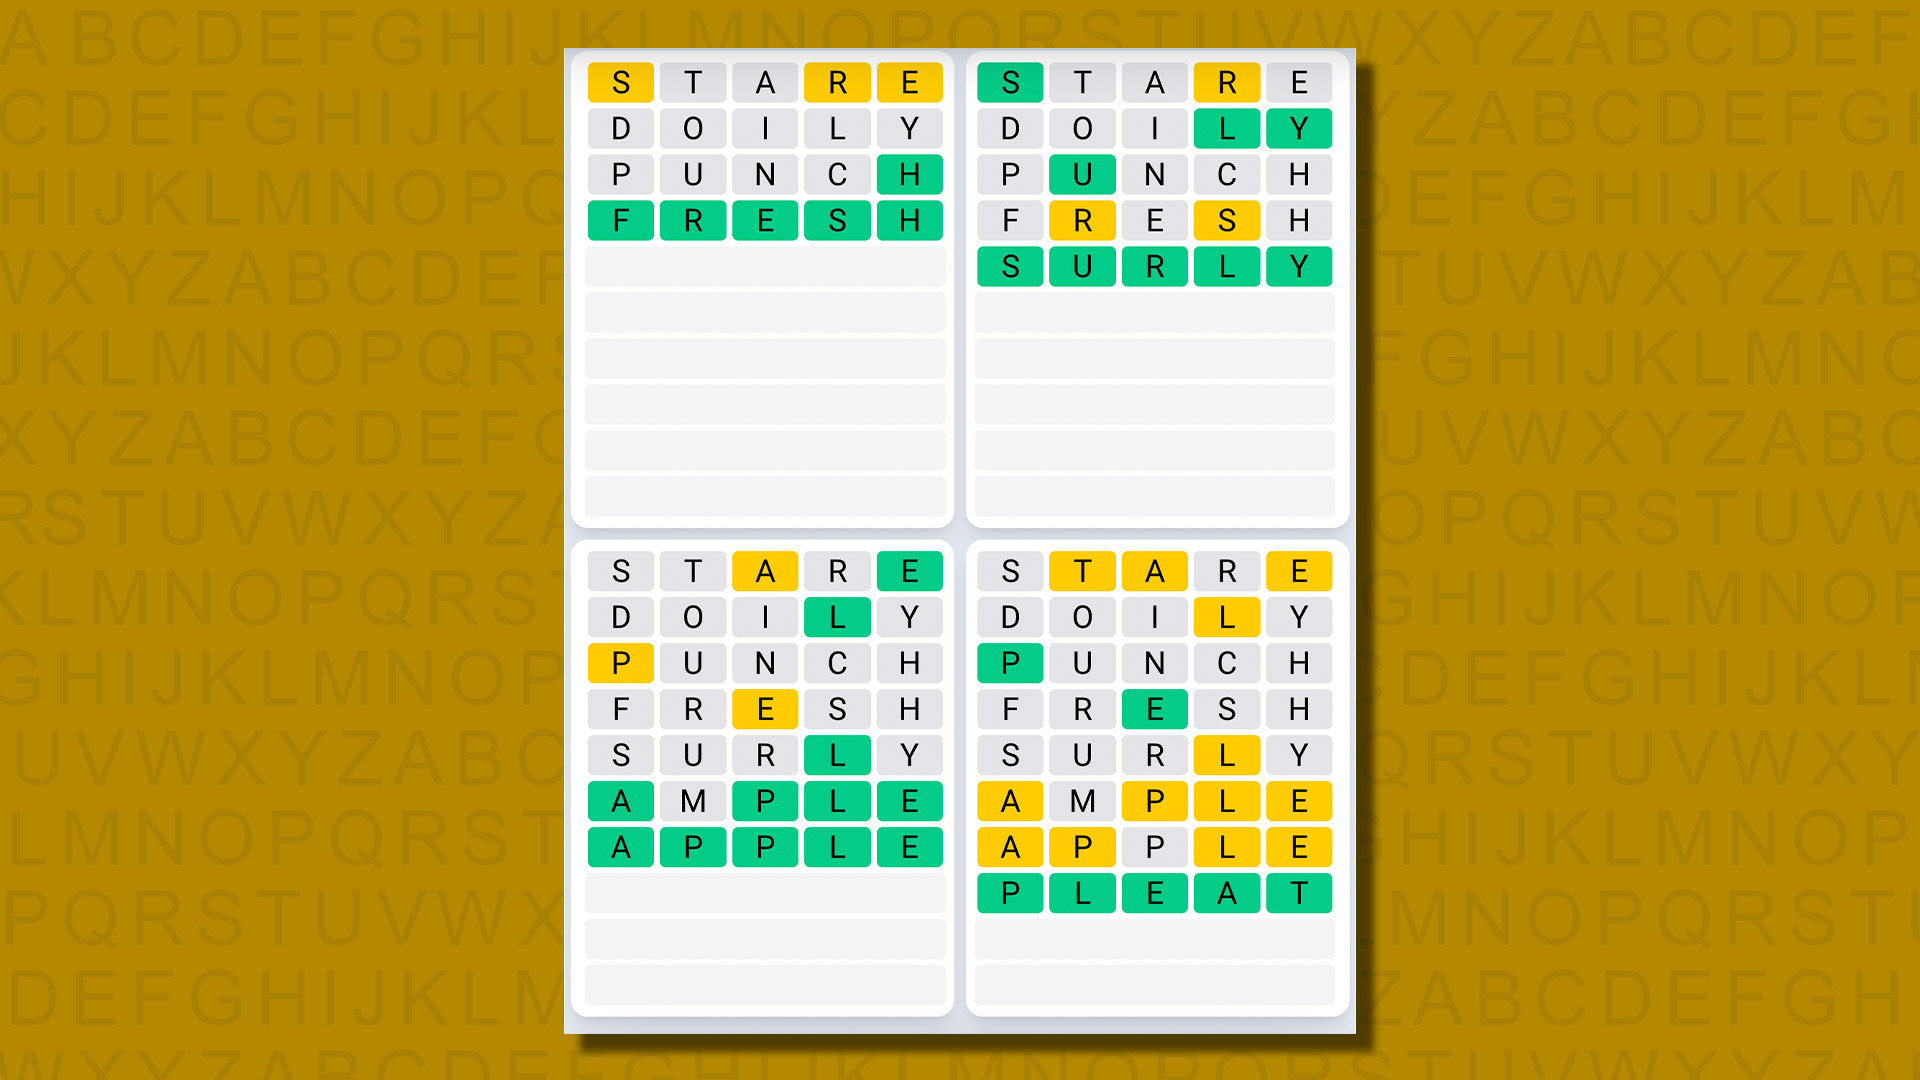 Ежедневная последовательность ответов Quordle для игры 617 на желтом фоне